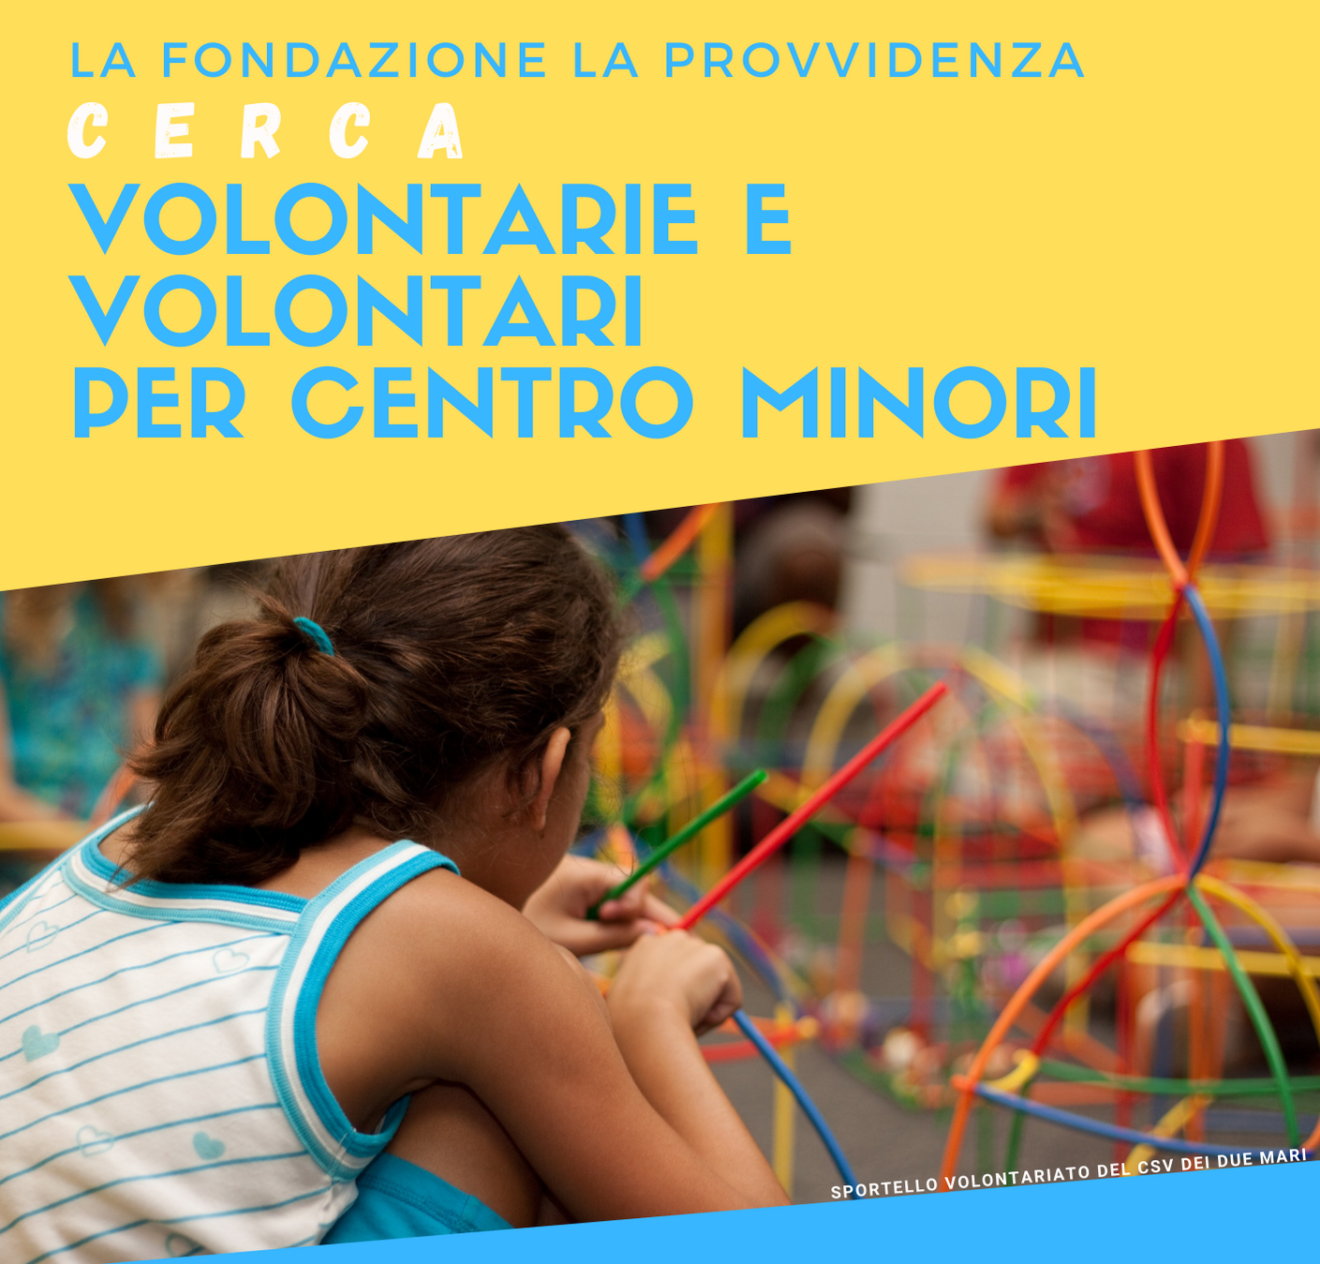 A.A.A. Cercasi volontari per Centro minori - Call della FONDAZIONE LA PROVVIDENZA di Reggio Calabria